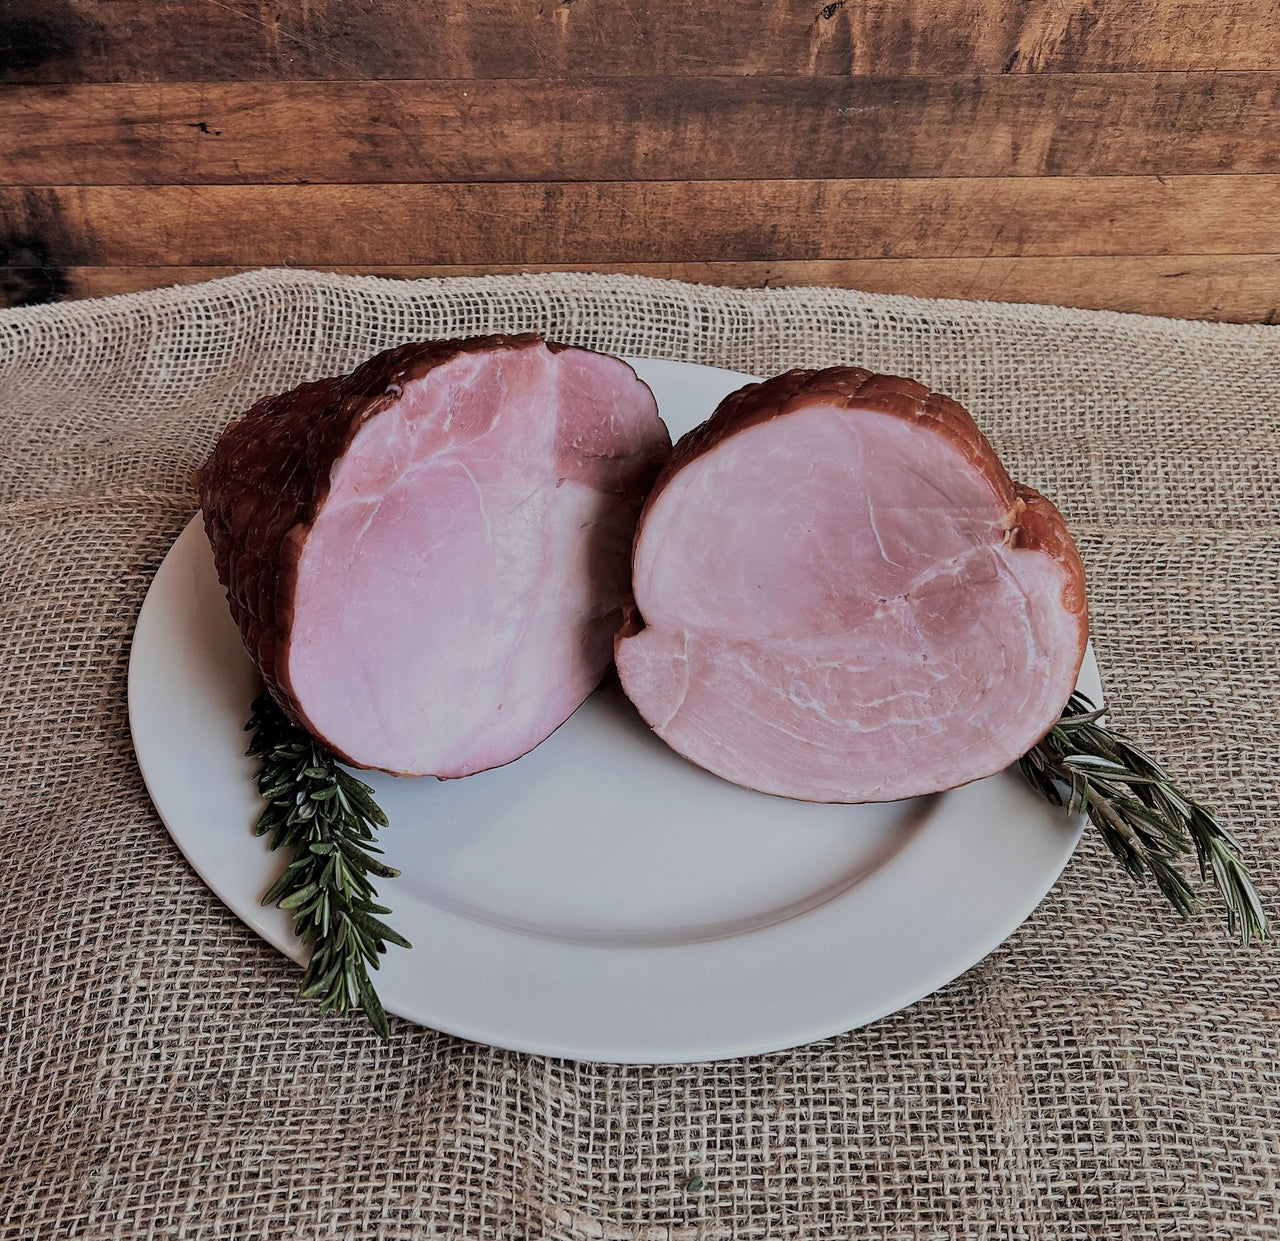 Smoked Boneless Ham 4 - 6 lbs.